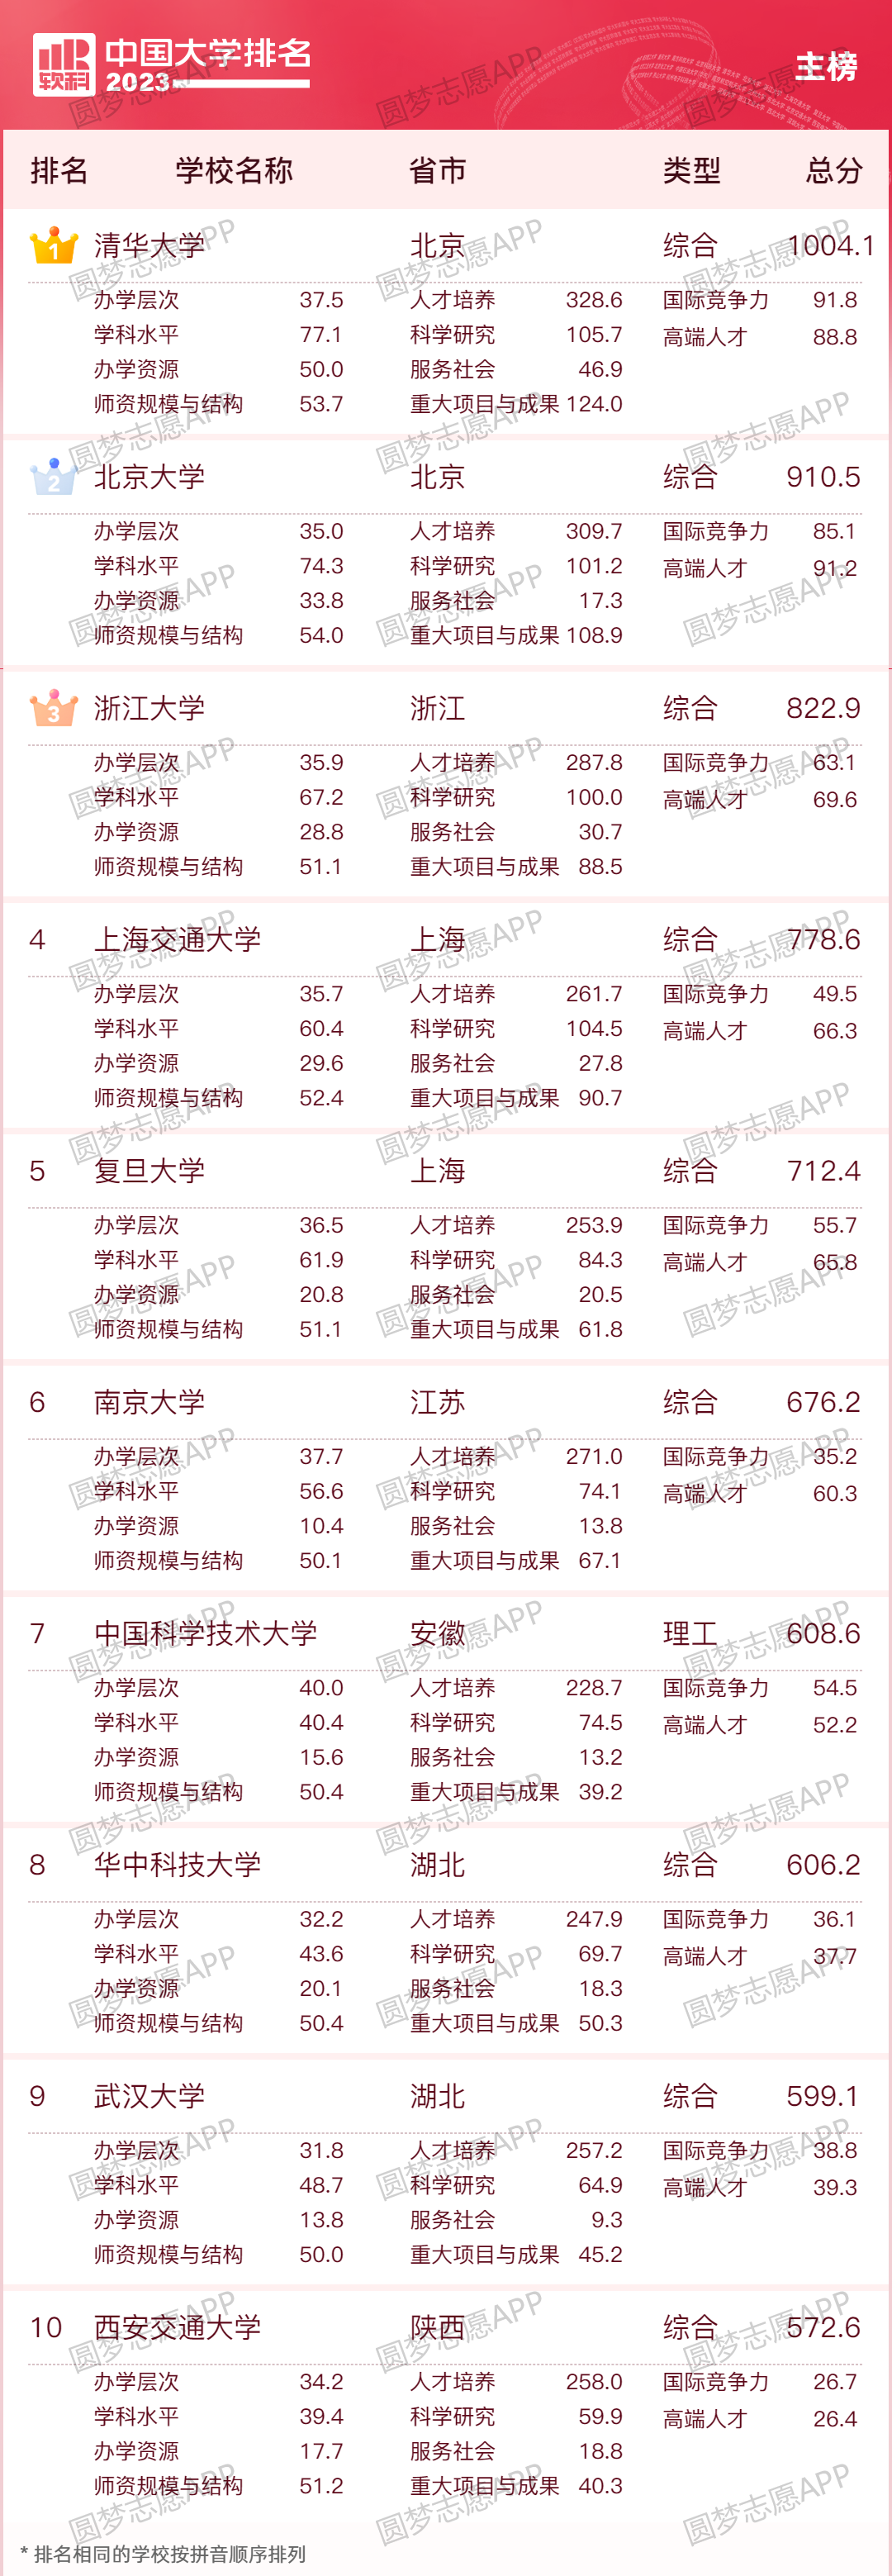 最权威的中国大学排名前100名-最新中国大学排行榜